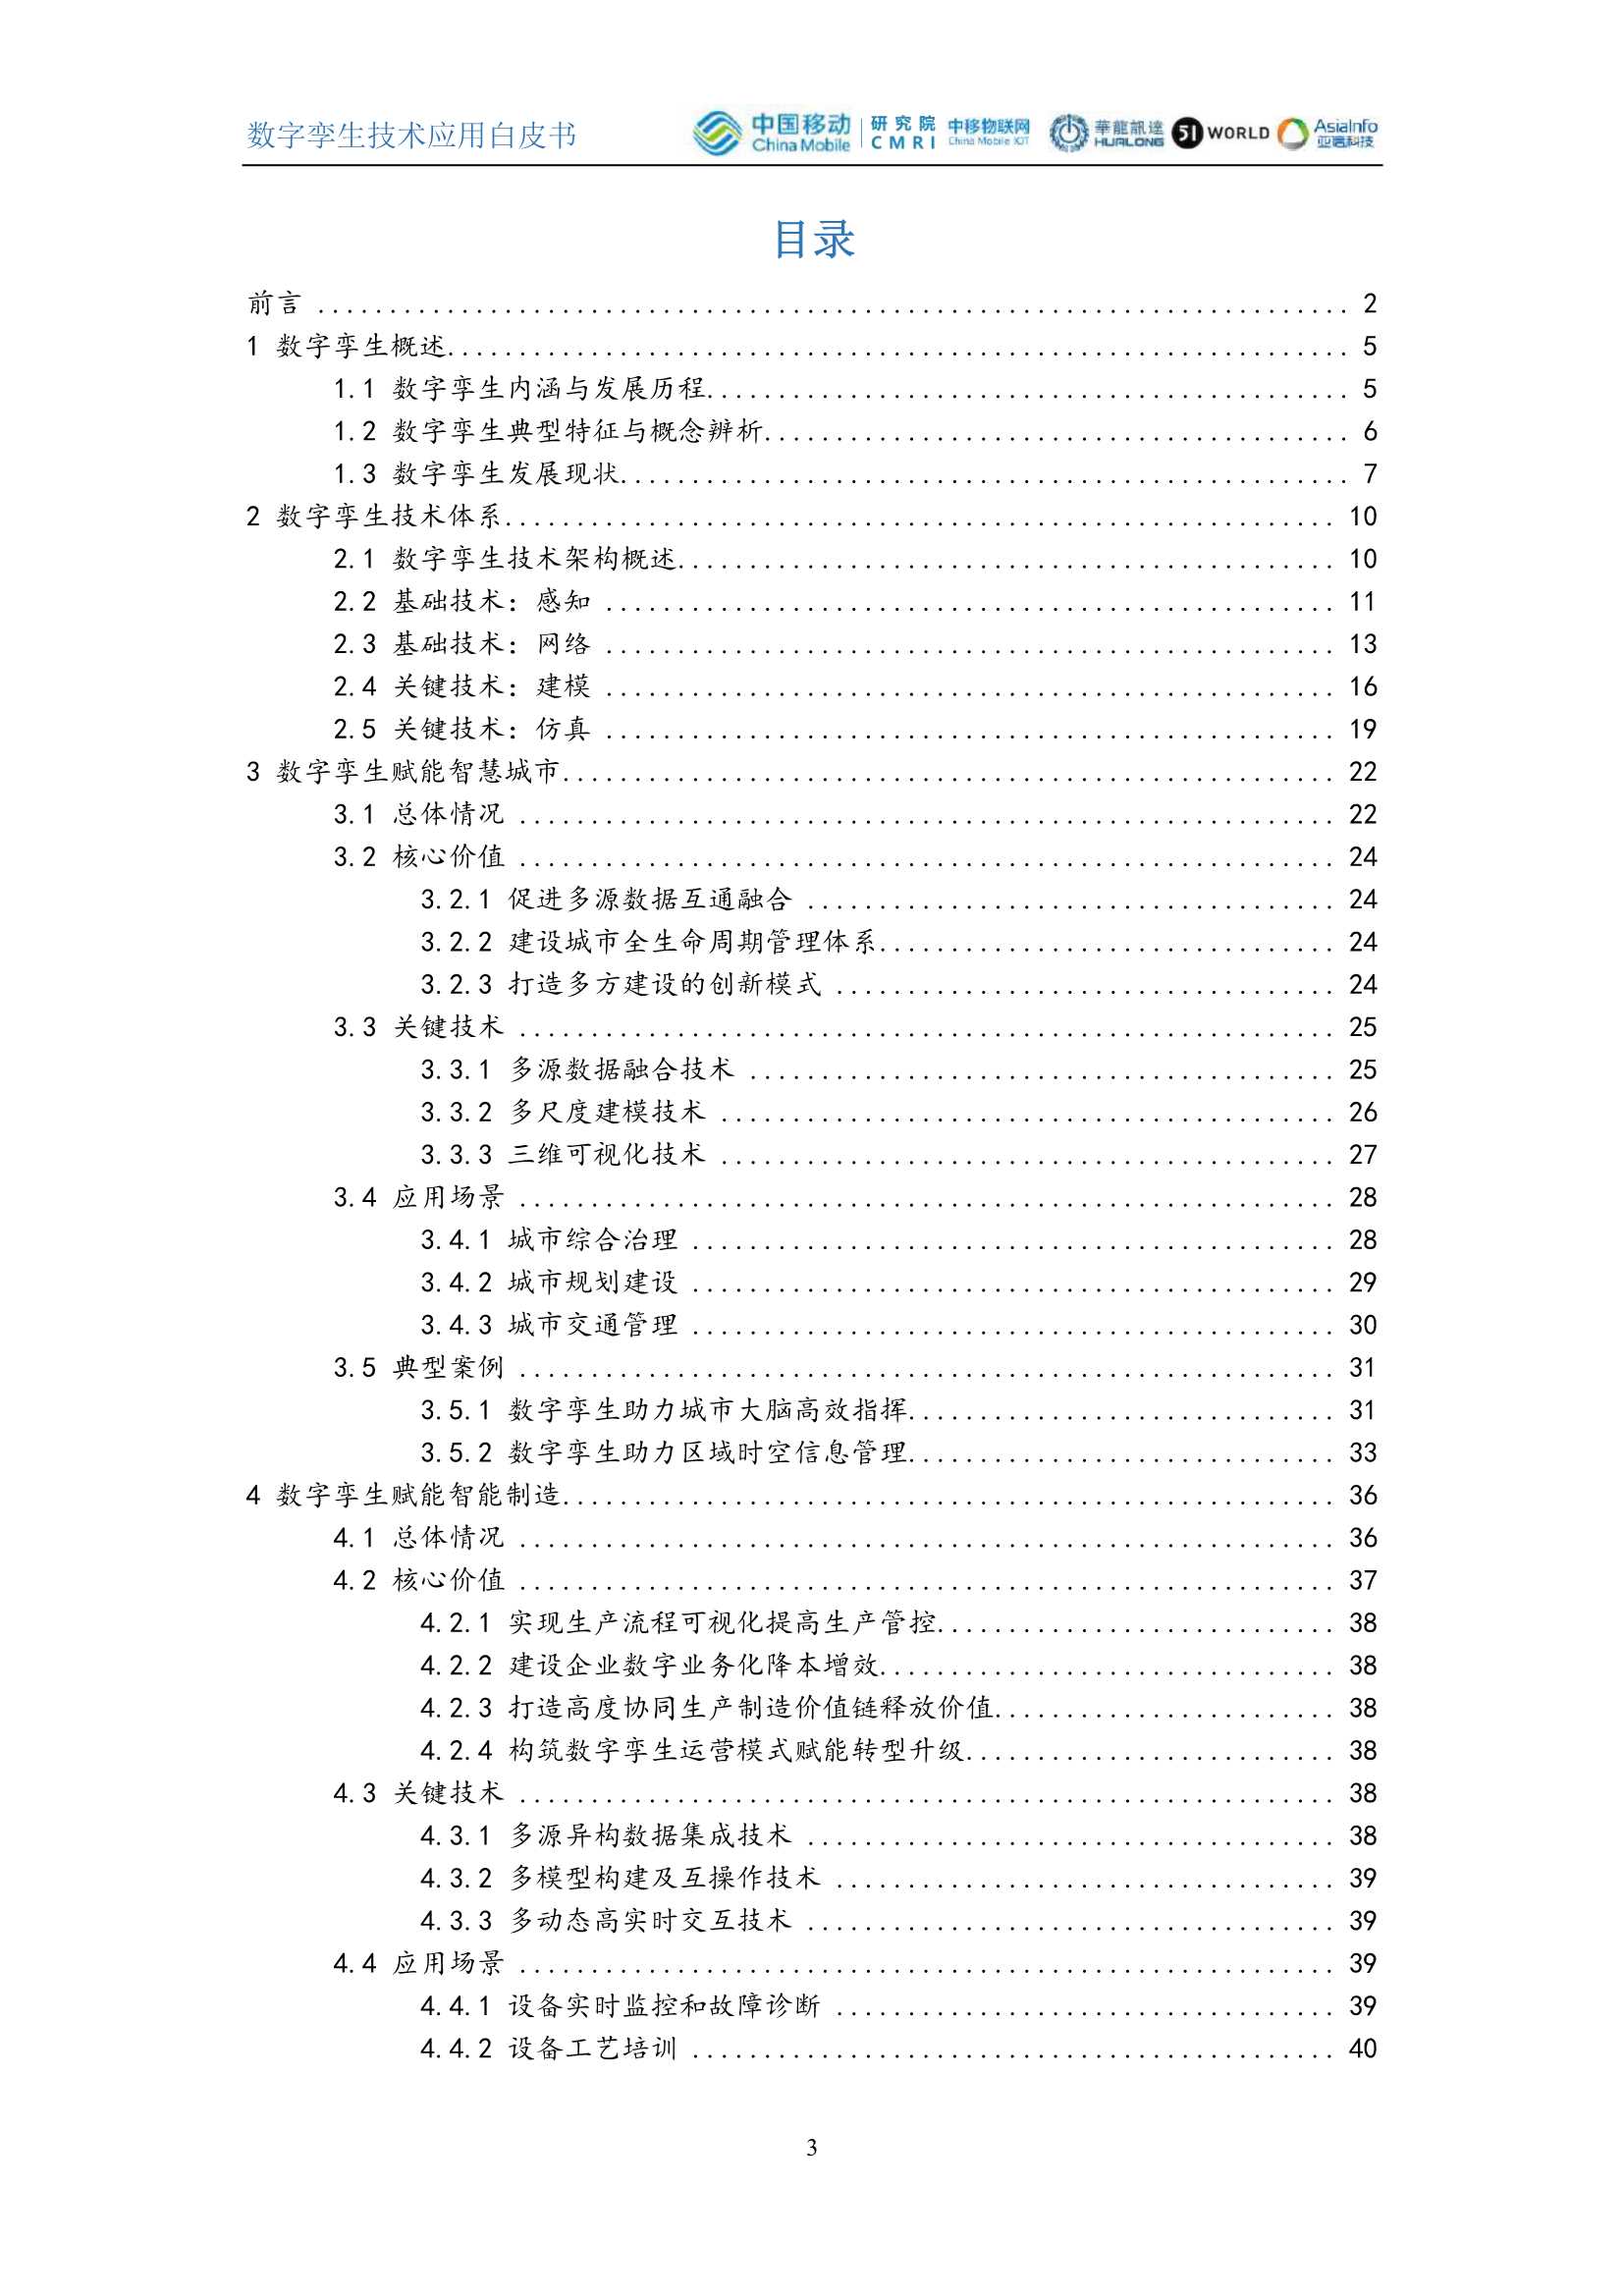 中国移动-数字孪生技术应用白皮书-2021.12-64页